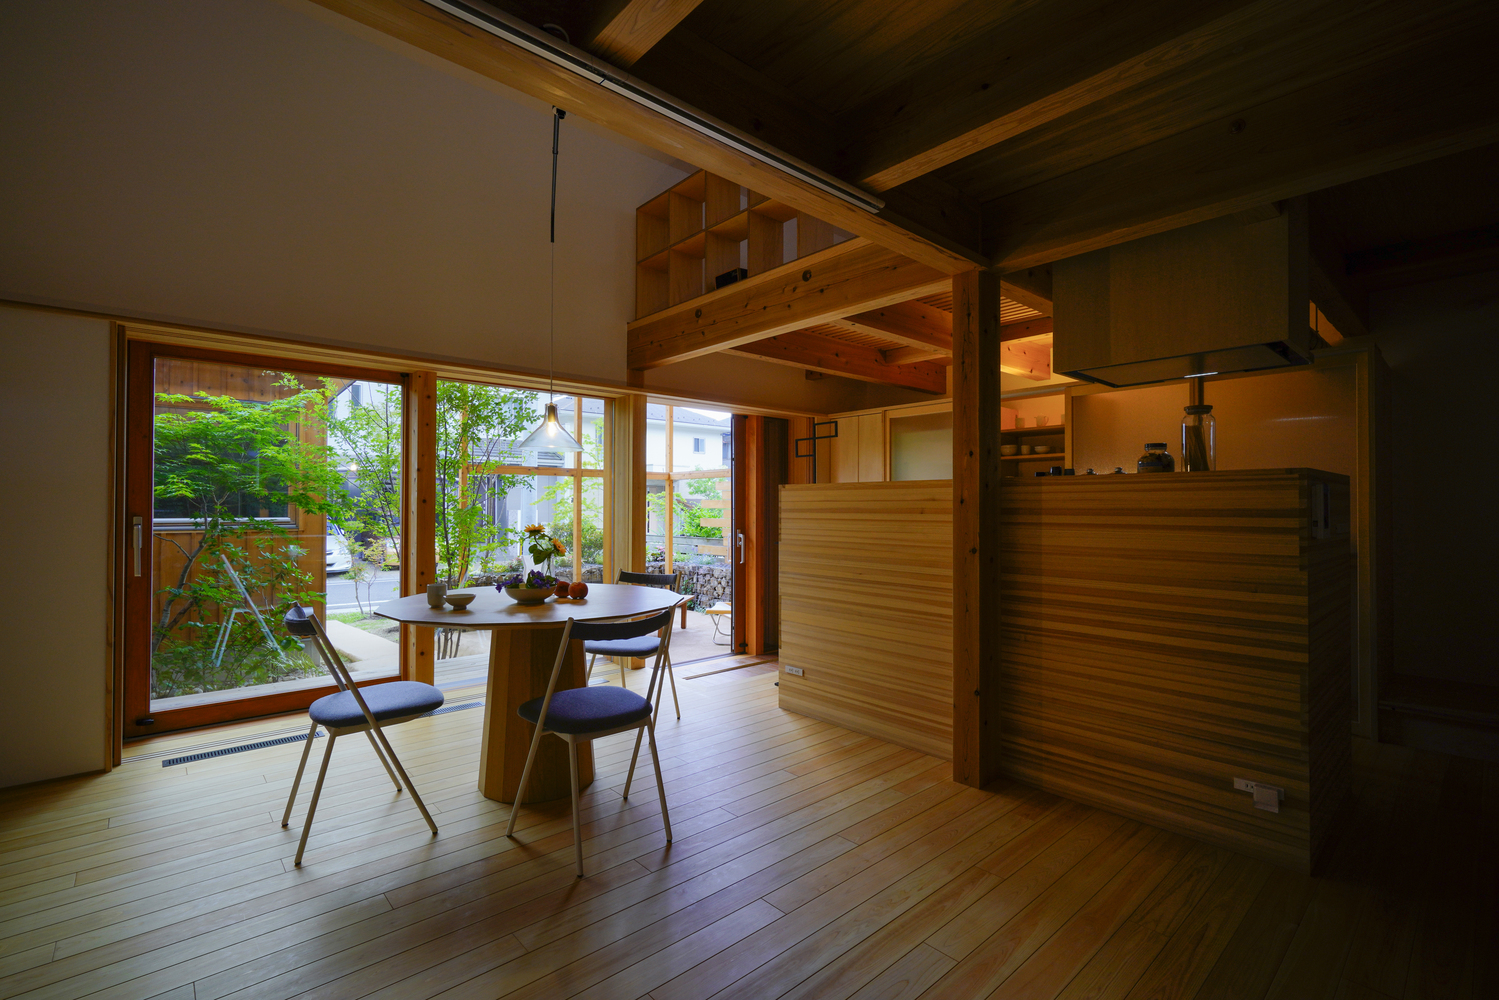 Có thể nói, phong cách thiết kế của người Nhật hướng đến sự tối giản, tạo không gian rộng rãi tối đa để ngôi nhà có không gian 'thở'. Nội thất đường nét gọn gàng, có loại dễ dàng xếp lại để lưu trữ. Gỗ là vật liệu xây dựng được ưa chuộng hơn cả.